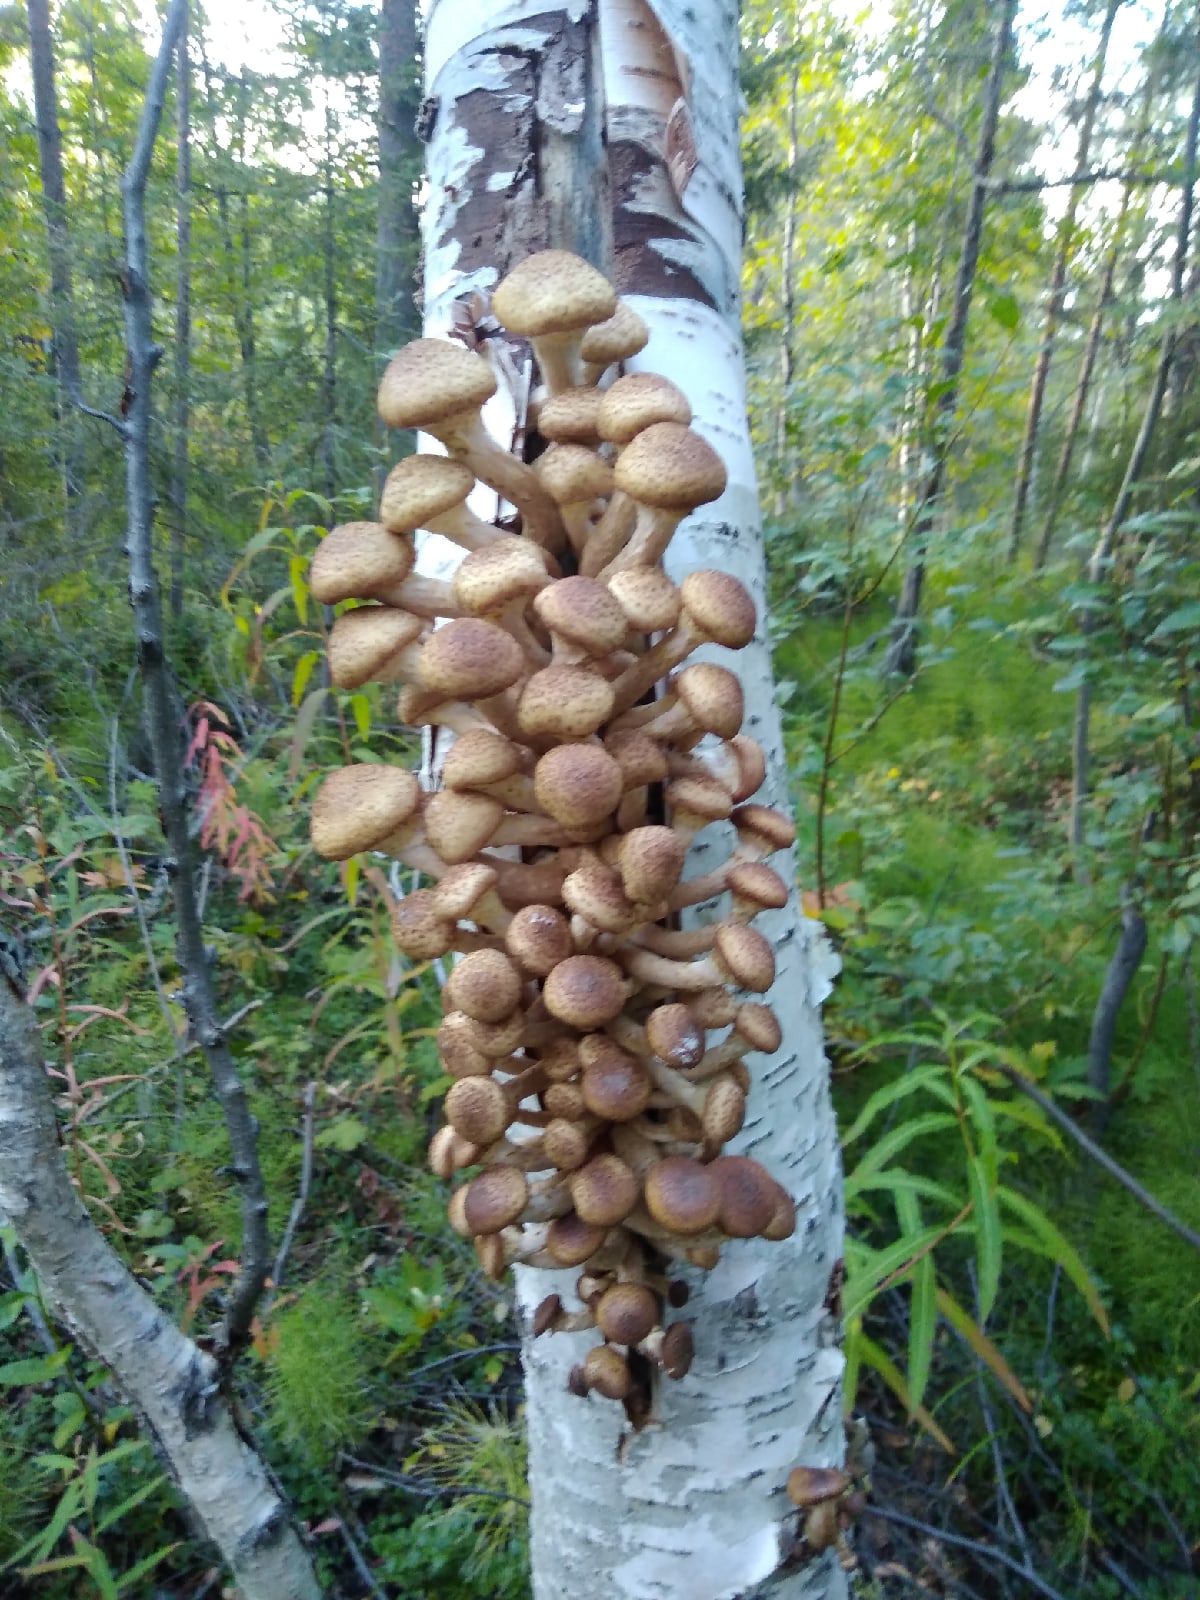 опята грибы на березе фото